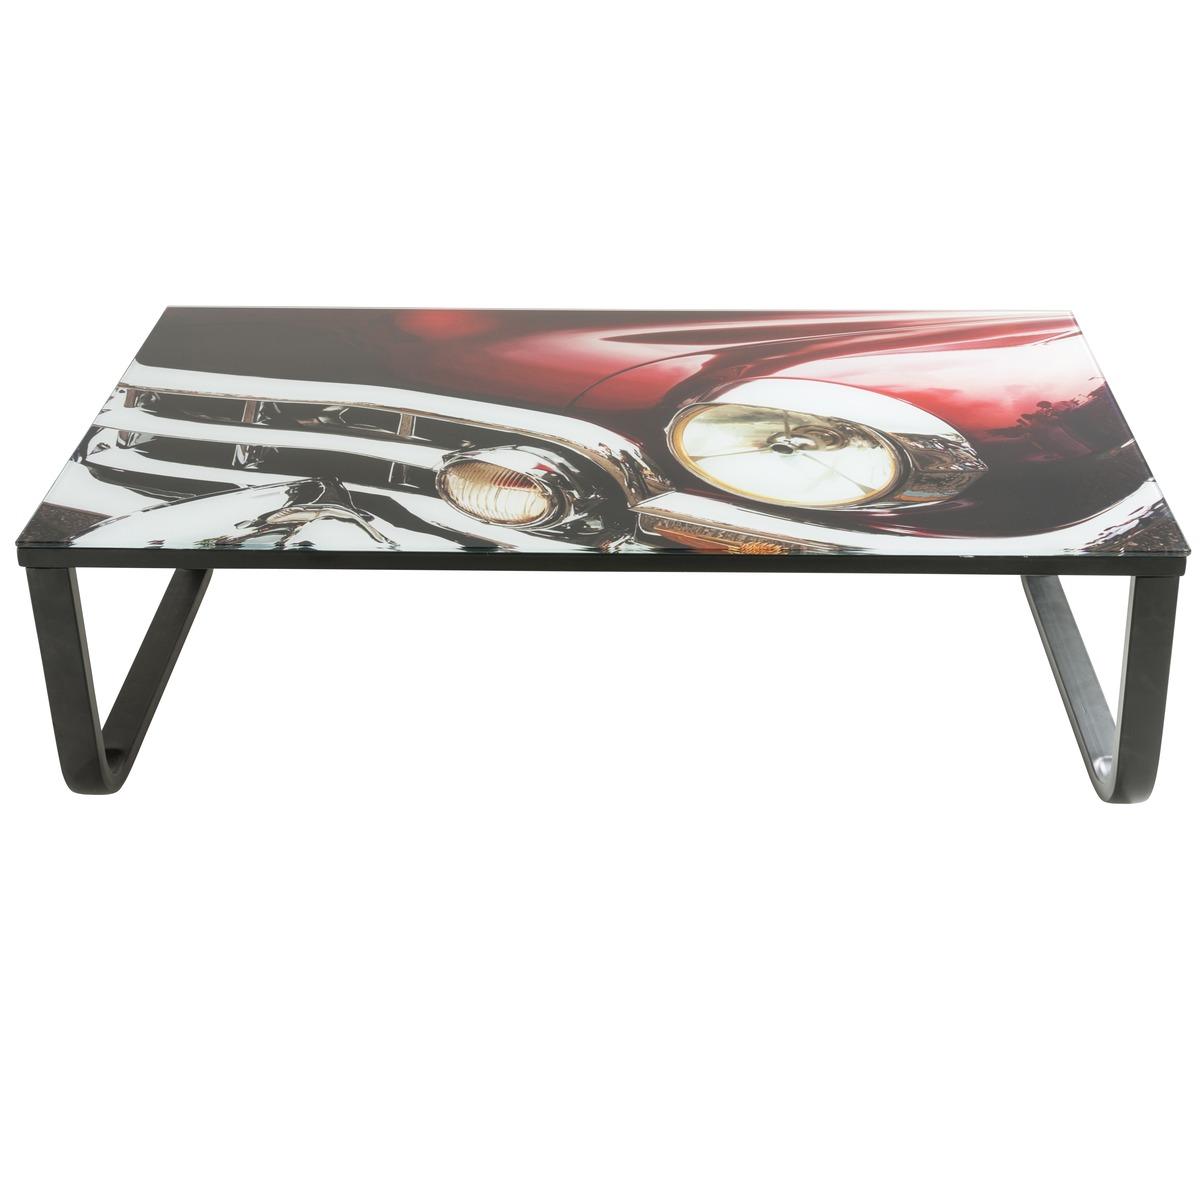 Table basse esprit Cuba - 105 x 55 x H 32 cm - Noir, rouge, gris